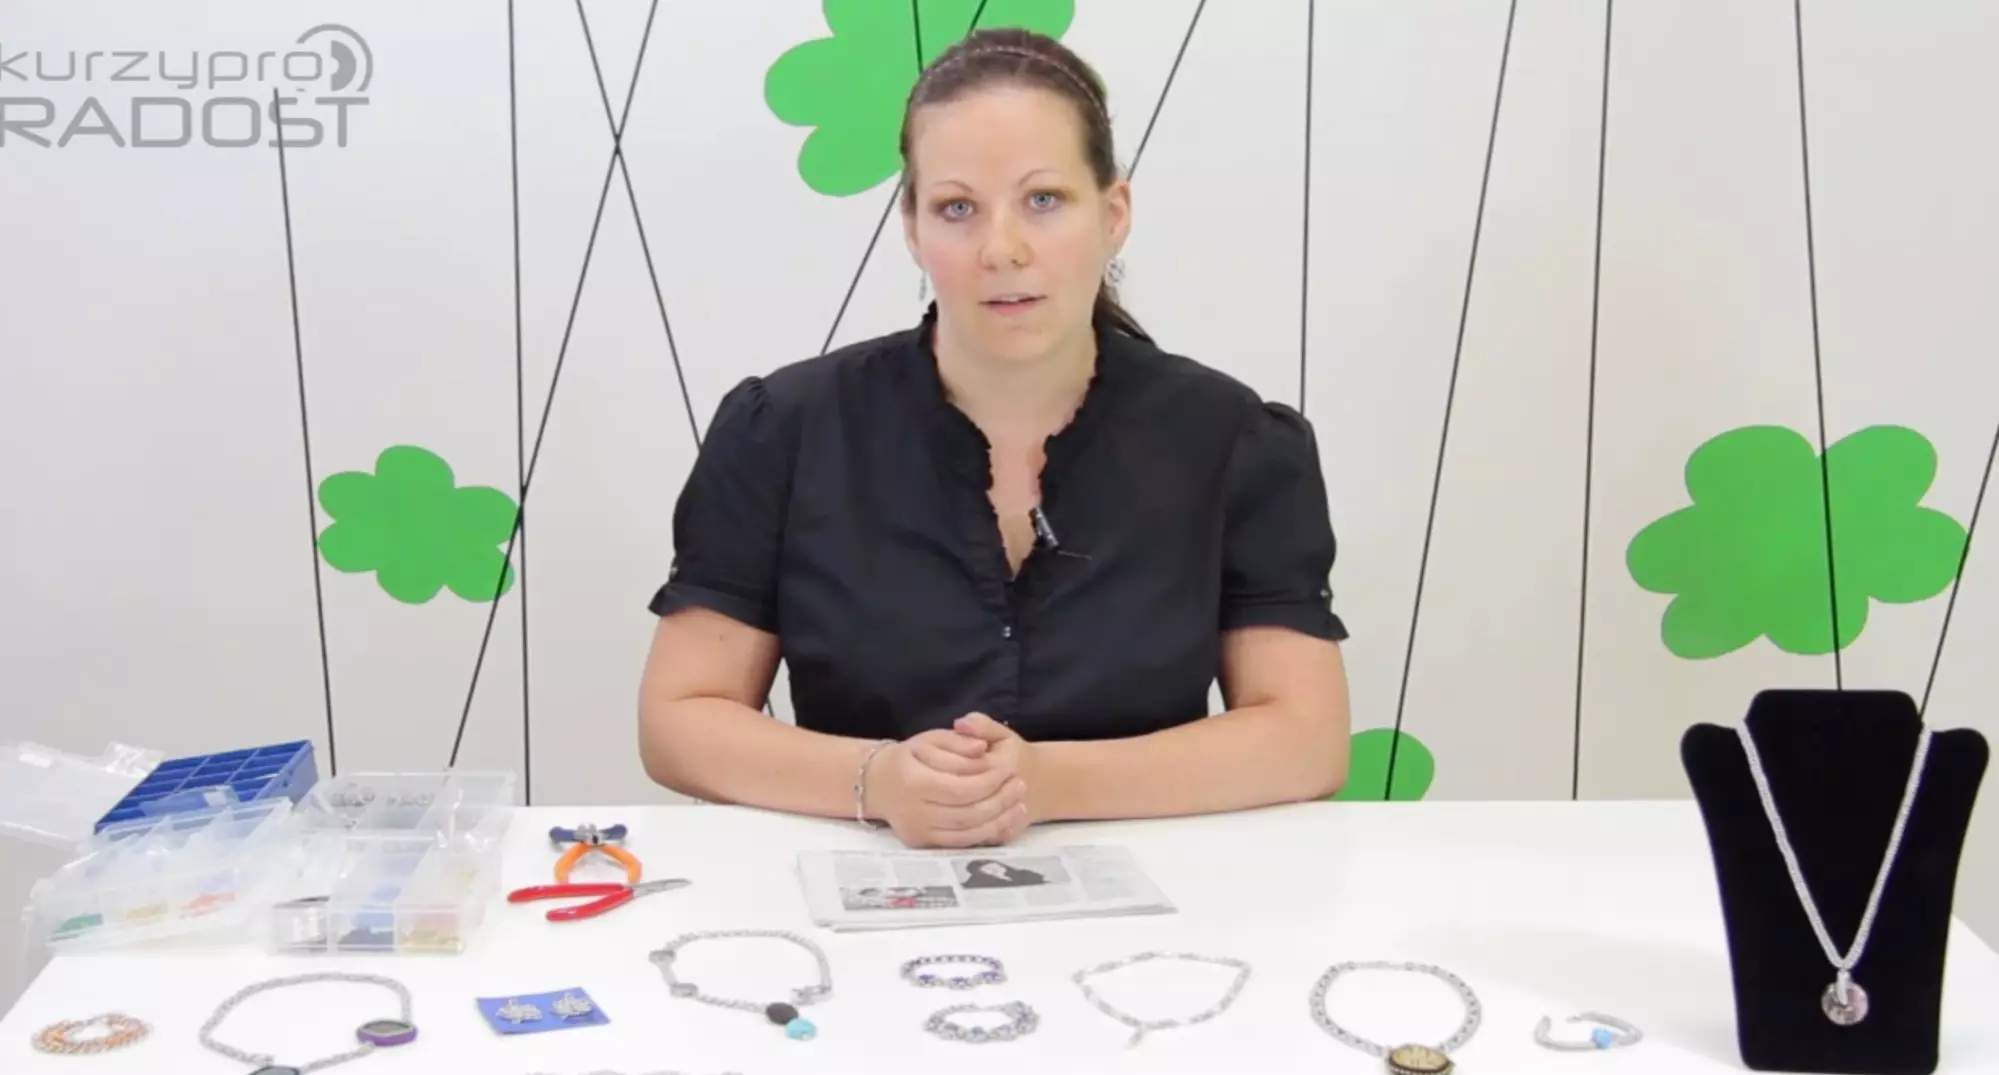 Jaroslava Kavalírová: Chainmaille – šperky z drátků a korálků (kroužkování)